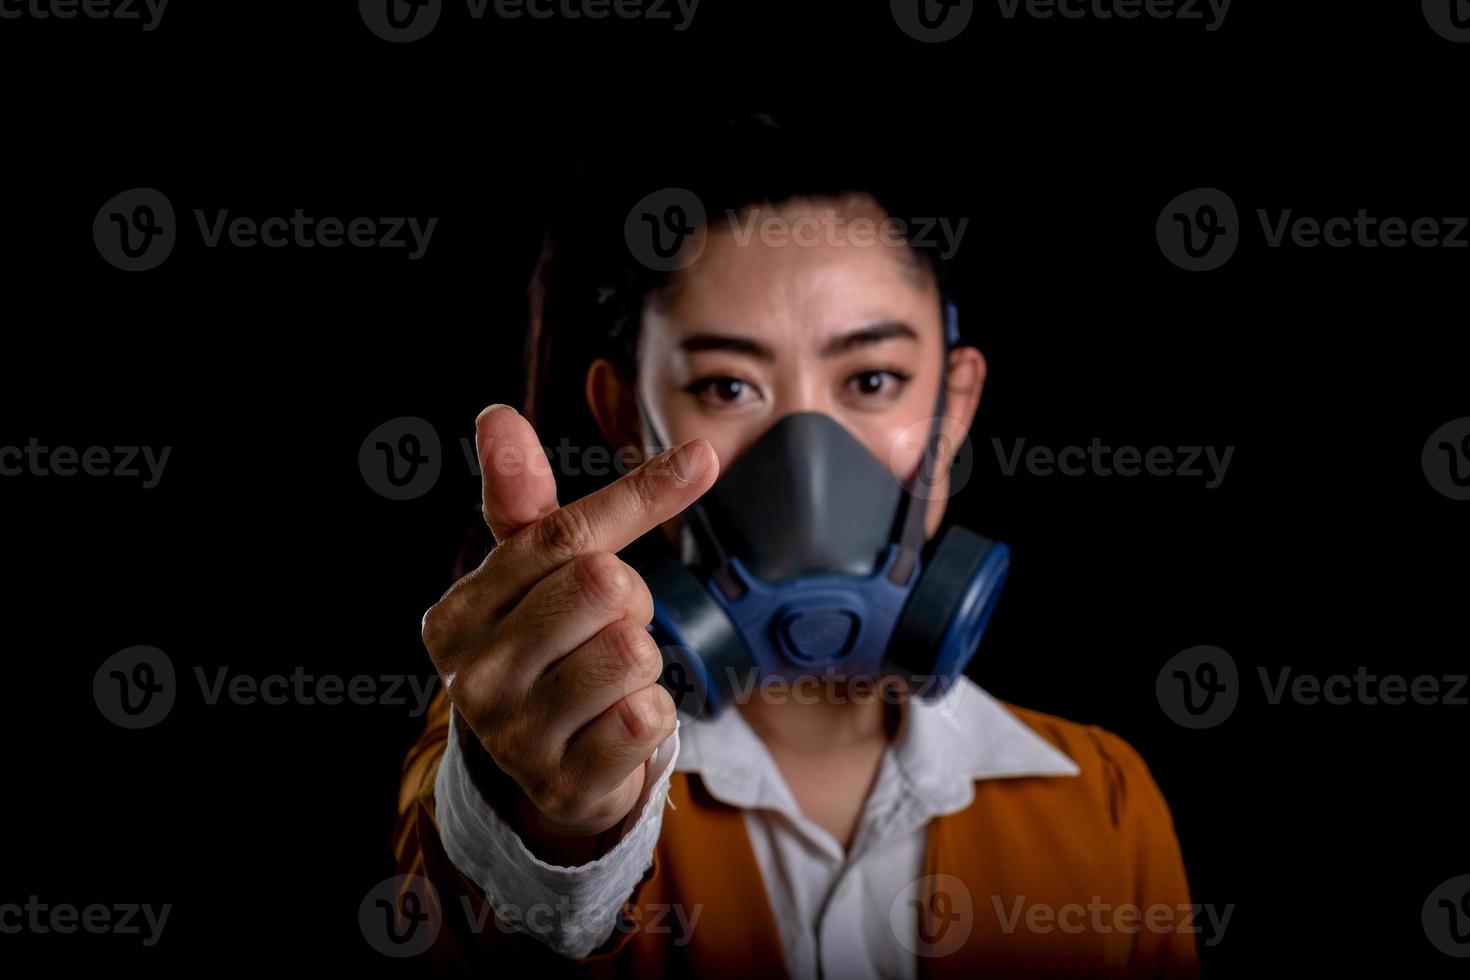 affärskvinna från ung asiatisk kvinna som sätter på sig en andningsmask n95 för att skydda mot luftburna luftvägssjukdomar som influensa covid-19 coronavirus pm2.5 damm och smog, kvinnor handtecken minihjärta foto